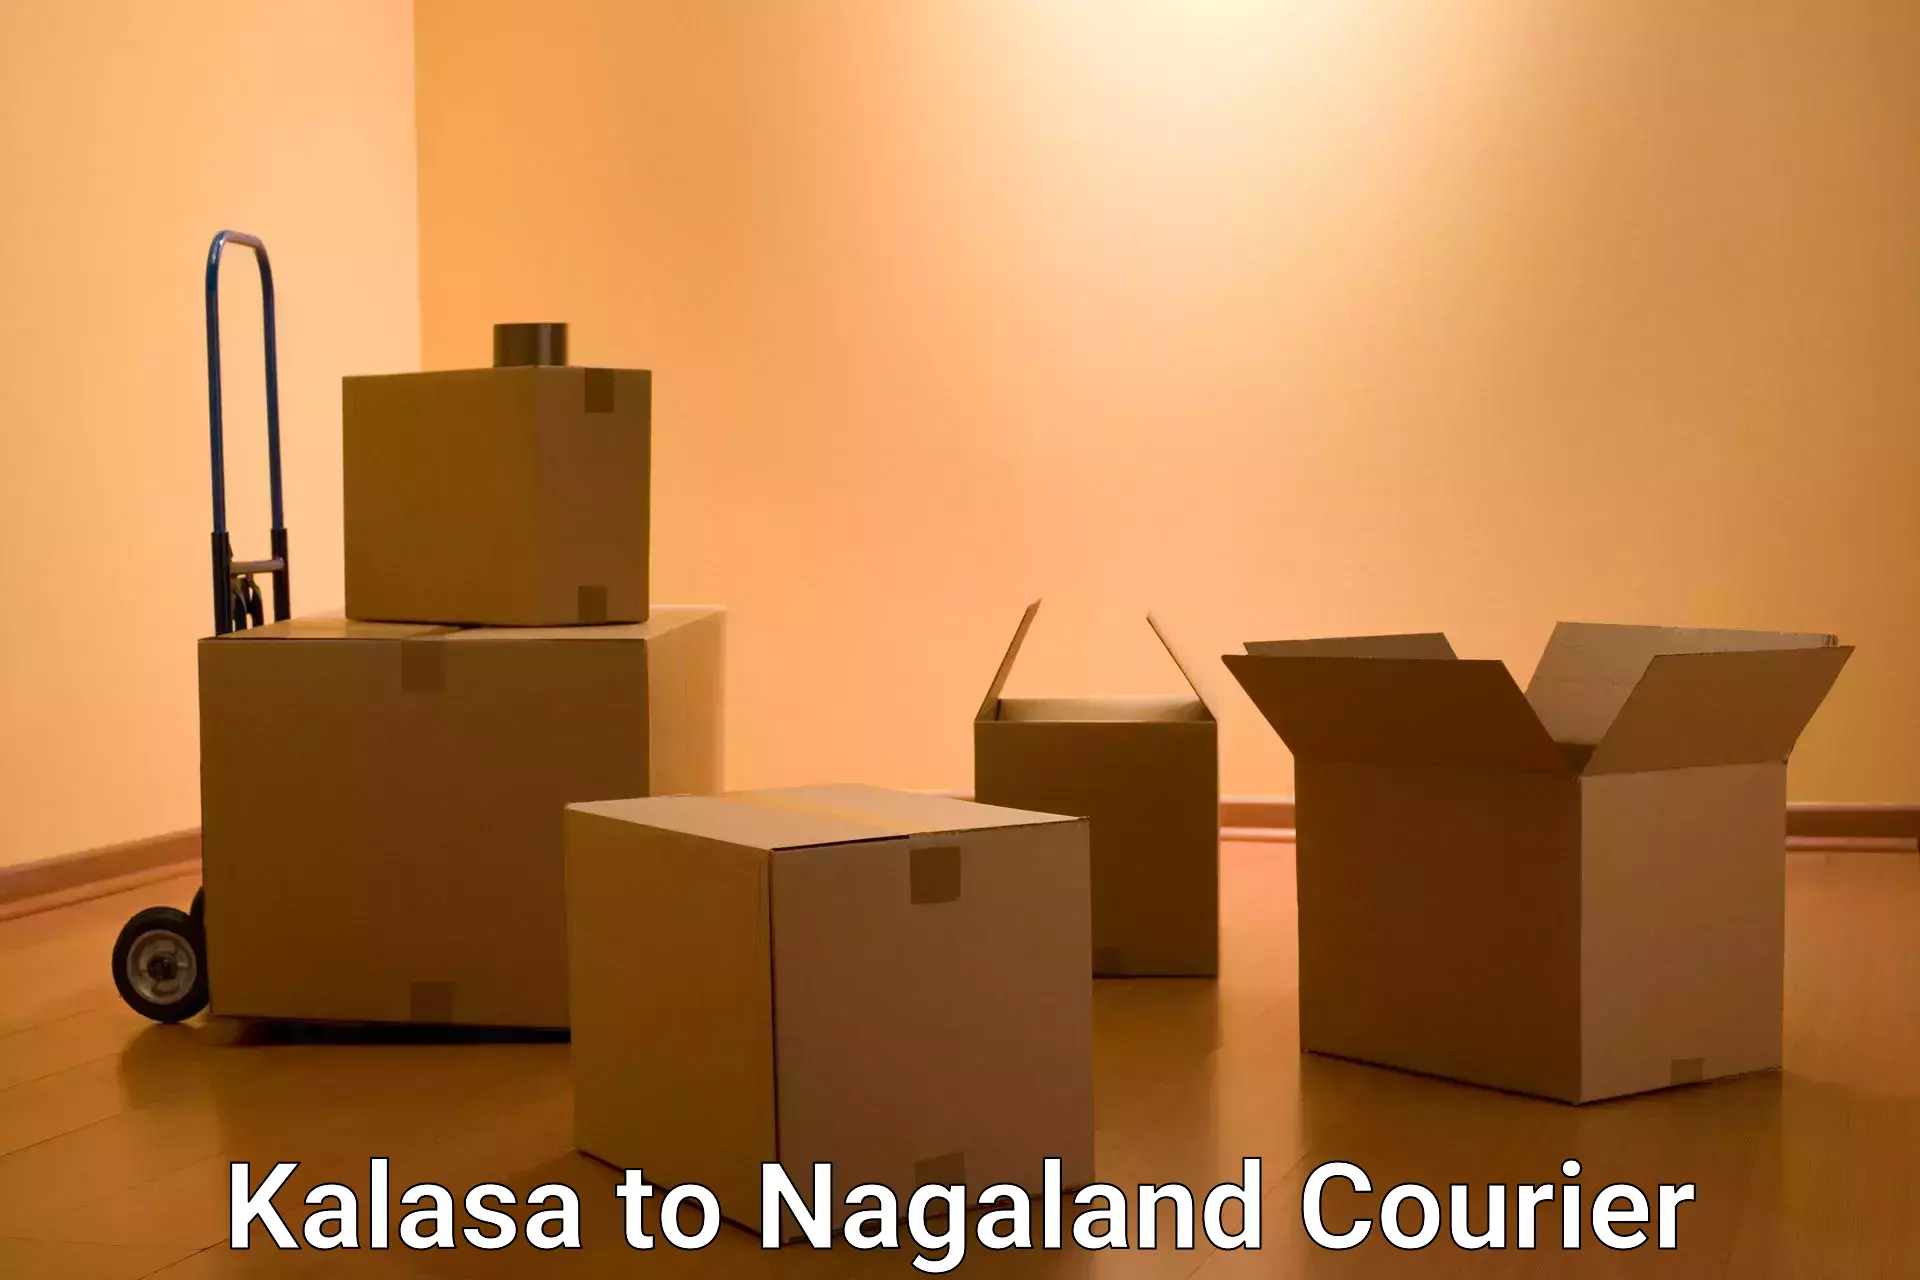 Bulk courier orders Kalasa to Nagaland